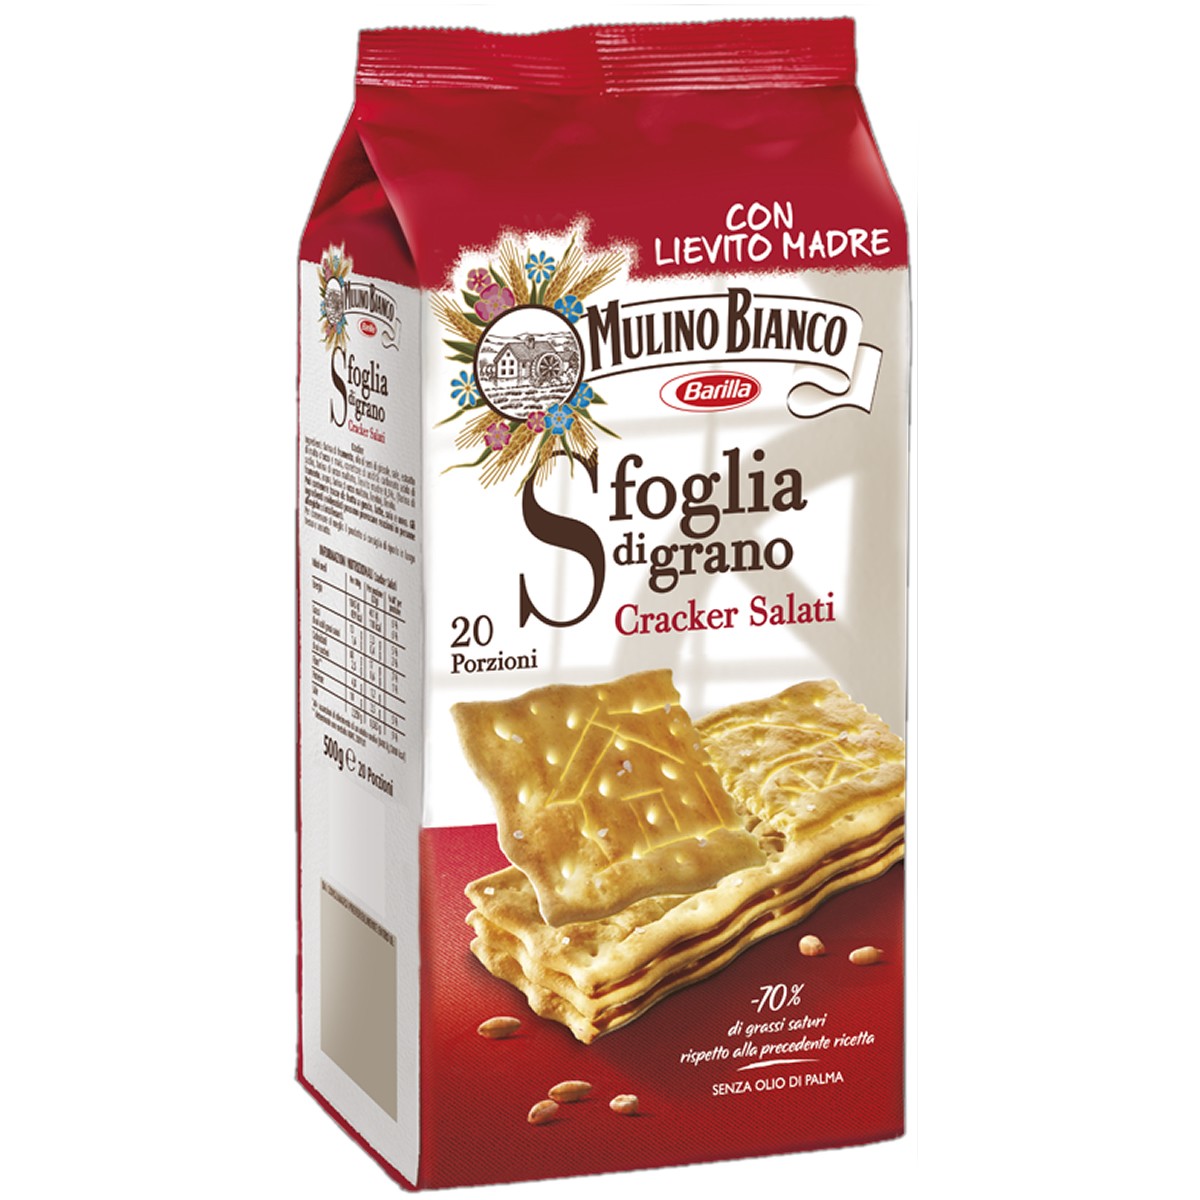 Cracker Salati - Mulino Bianco 500g - Mama's Way: Your